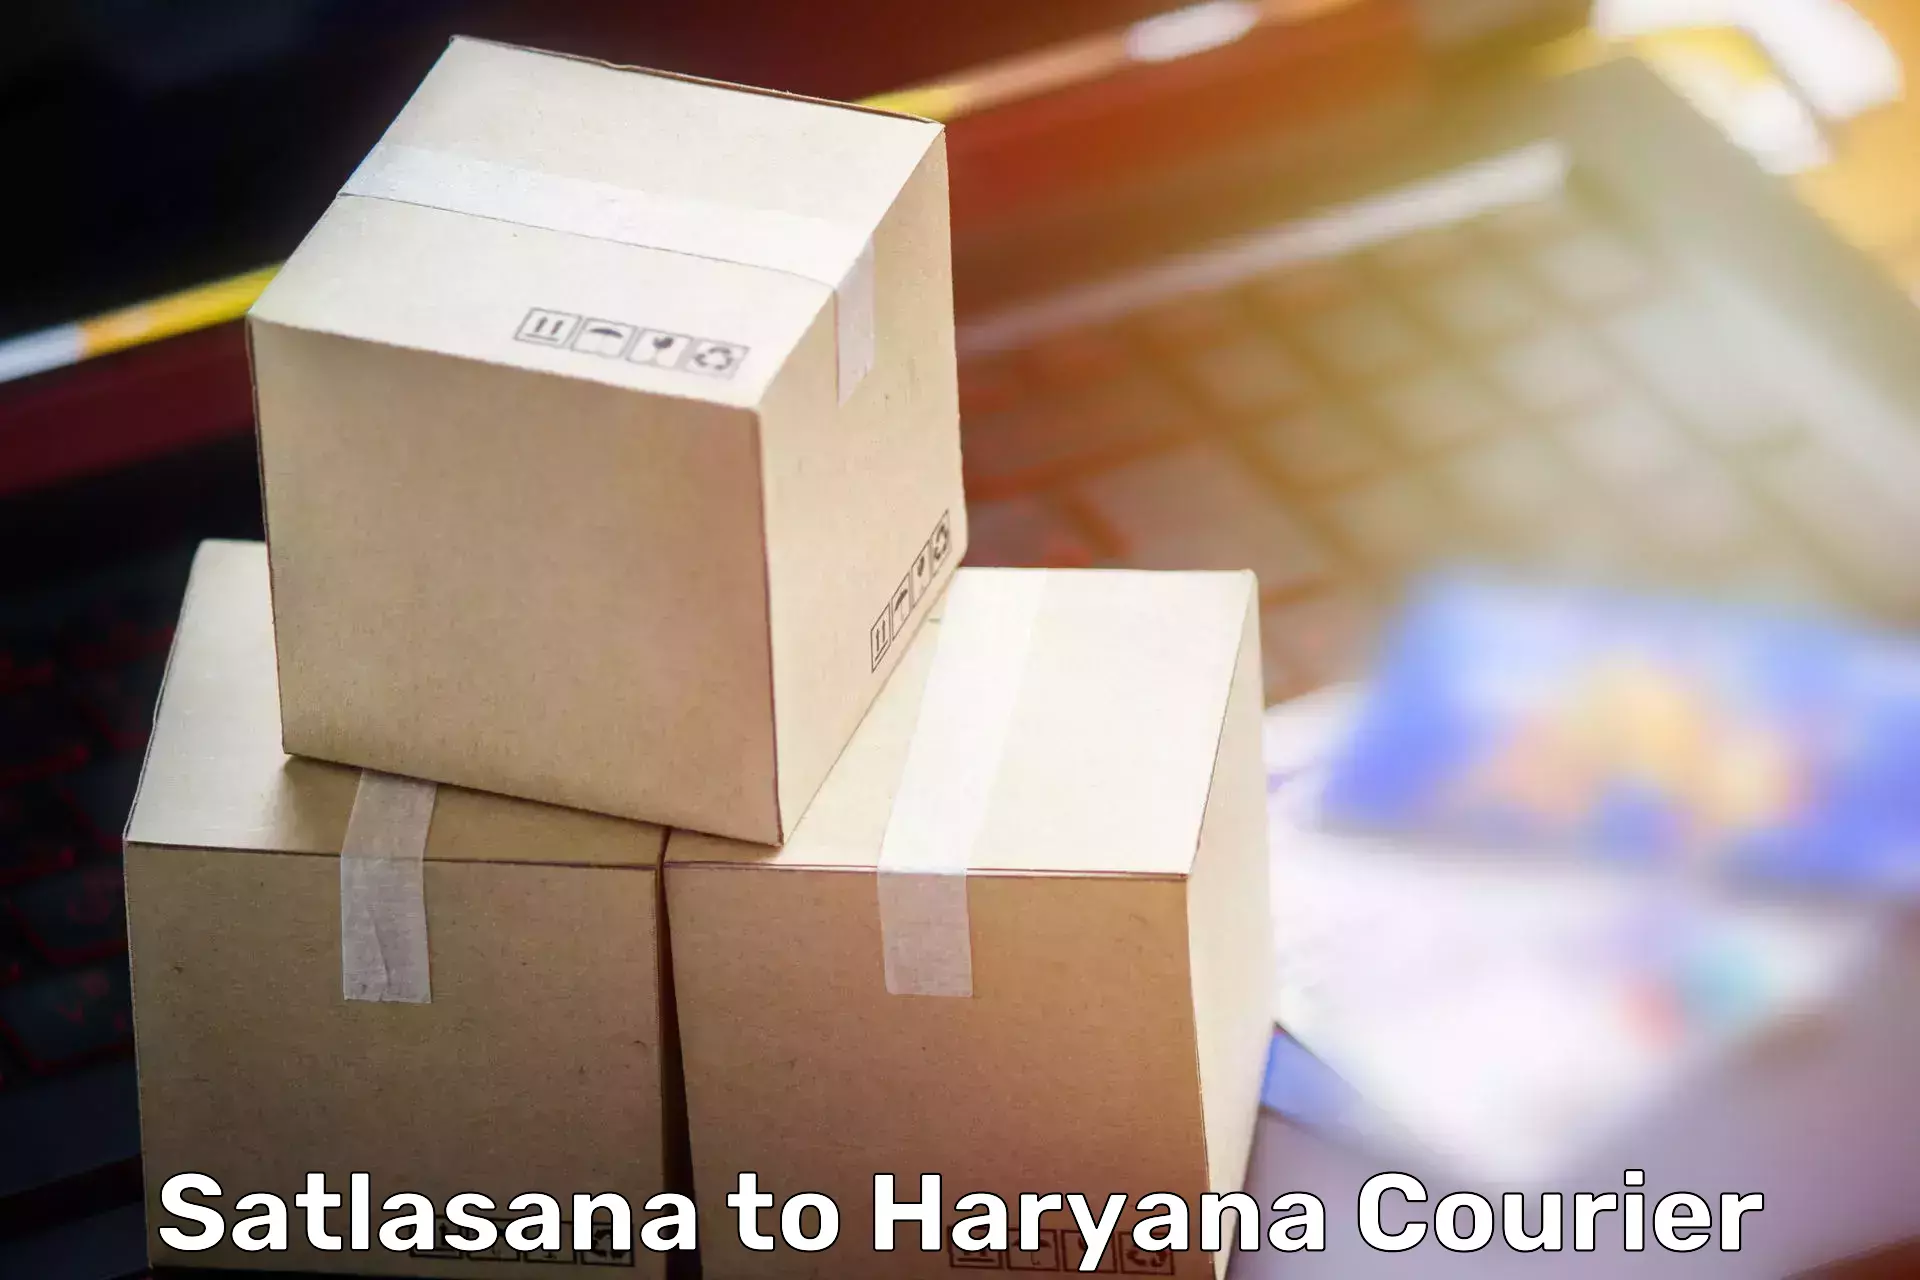 Furniture moving plans in Satlasana to Ambala